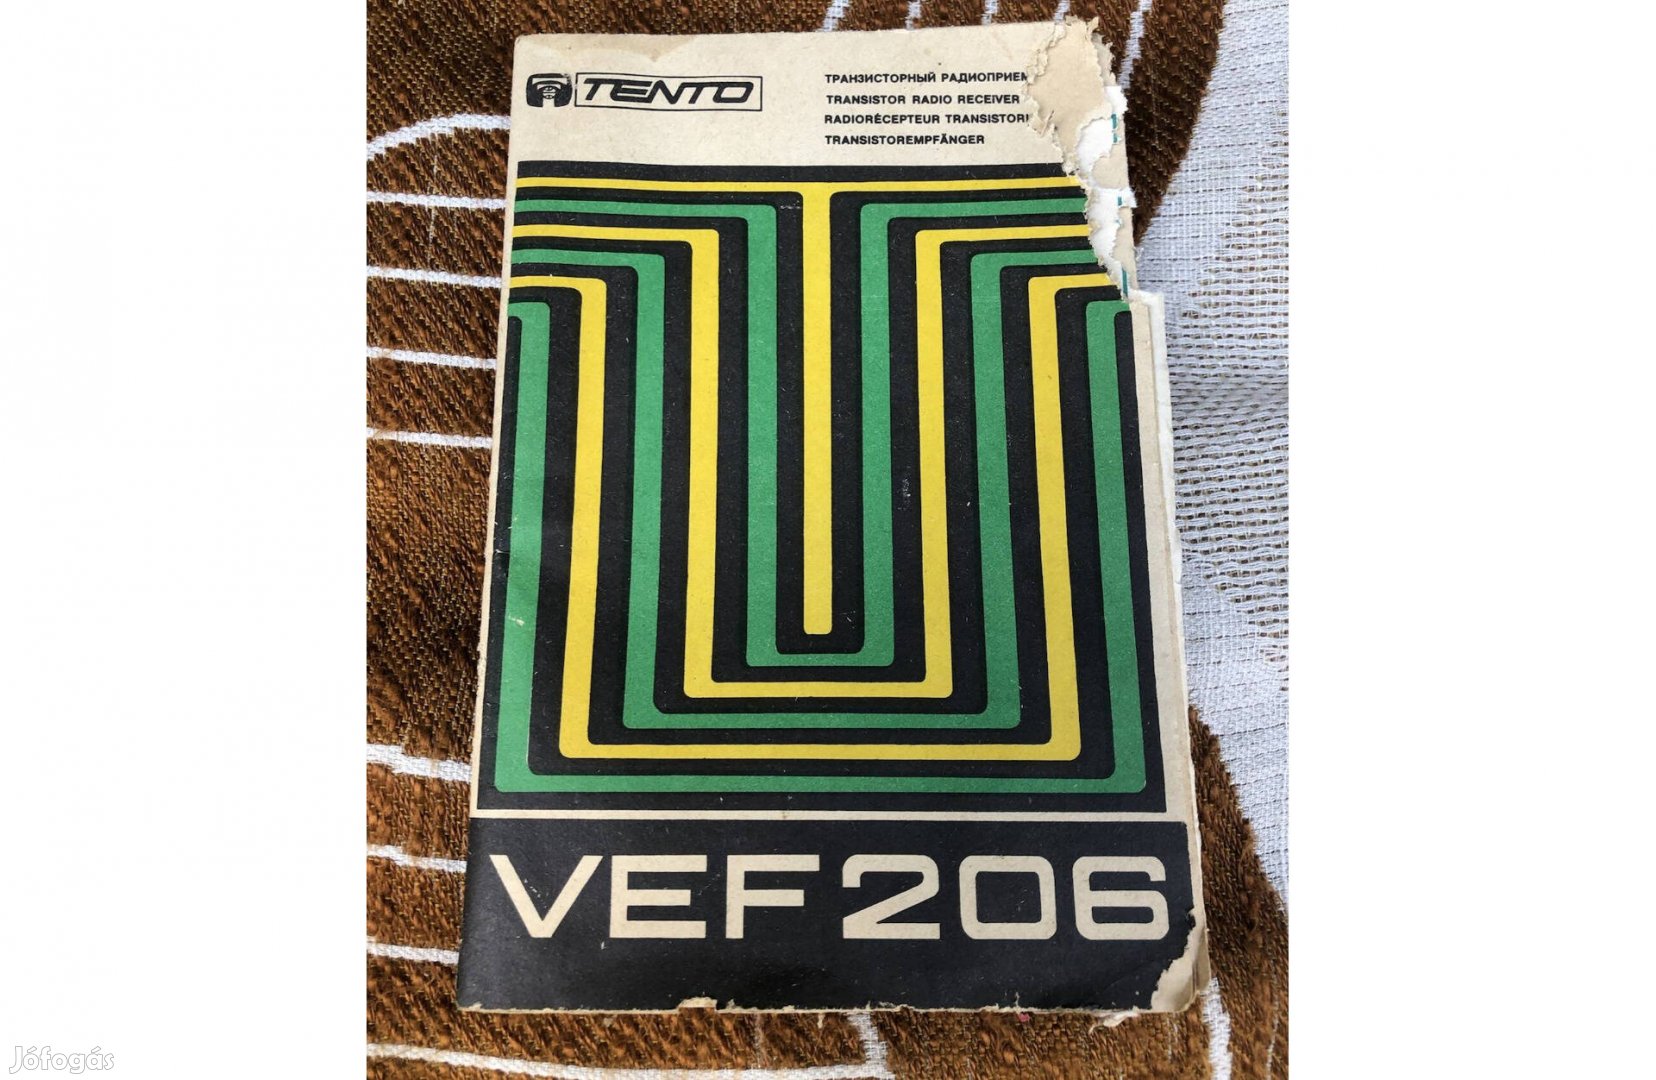 Vef 206 rádió jótállási jegye, leírása 1000 Ft :Lenti